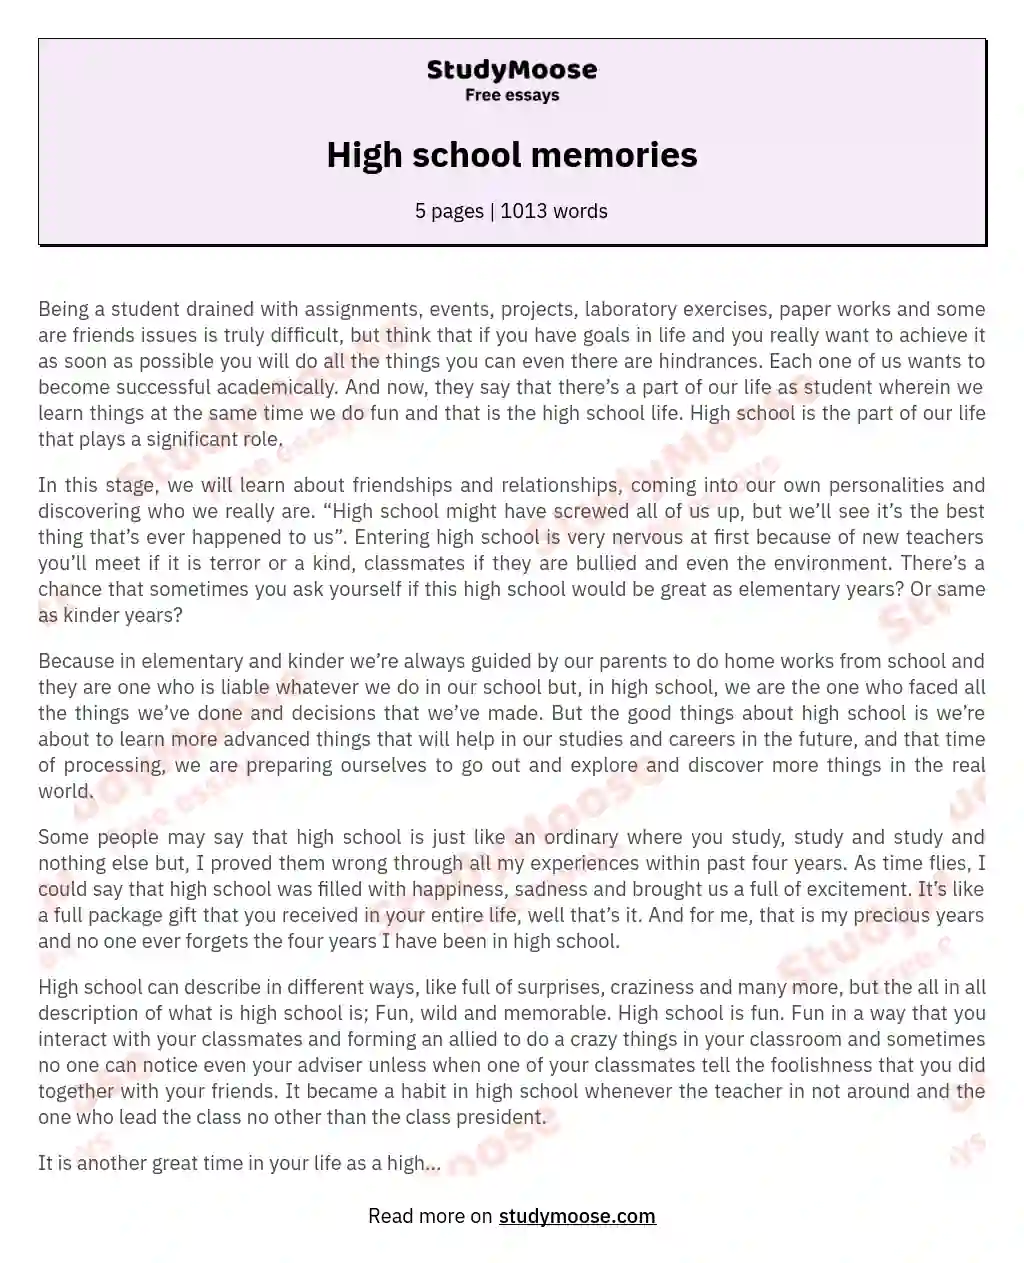 High school memories essay